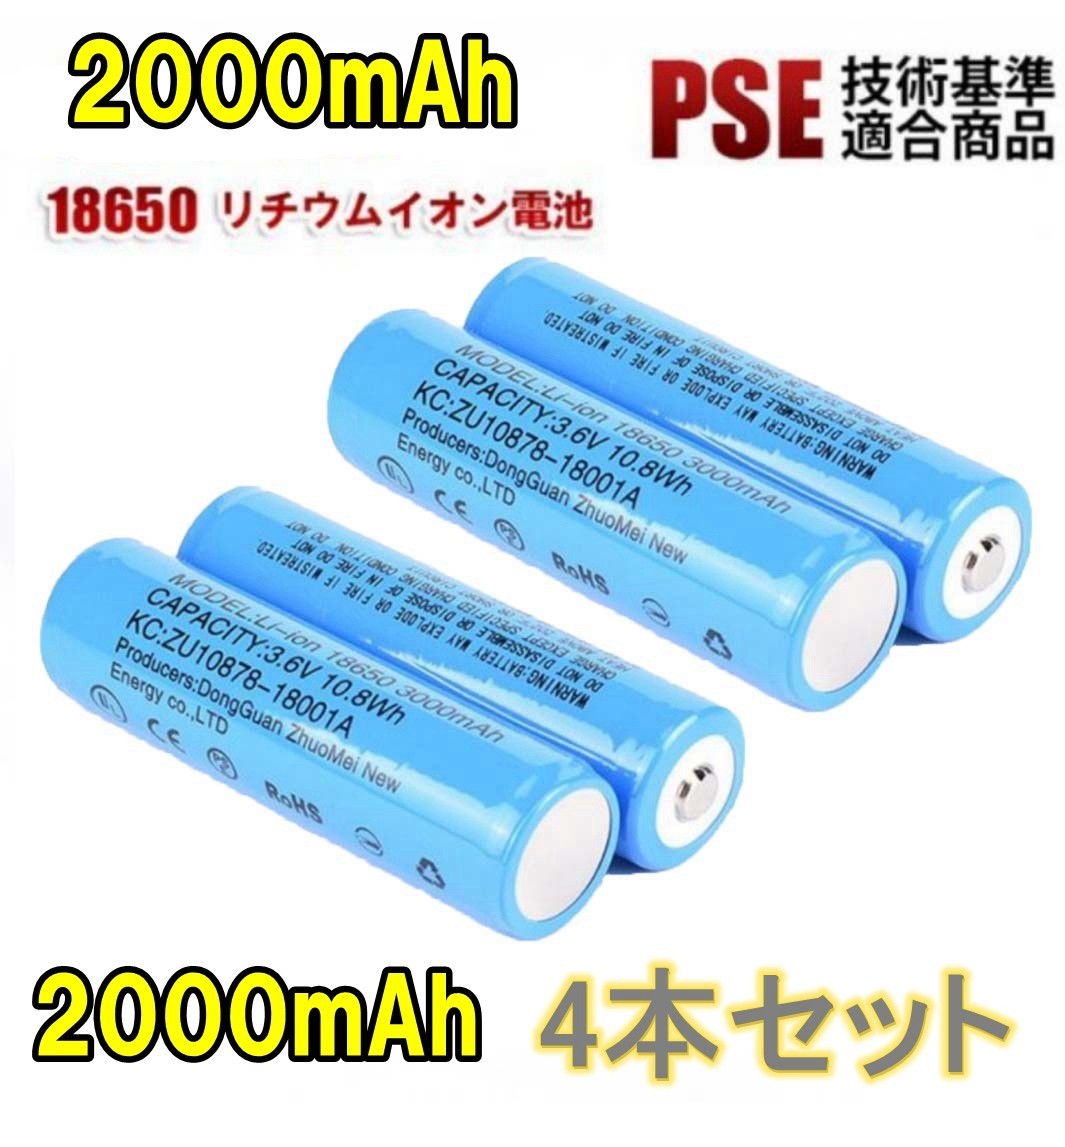 【4本セット】18650 リチウムイオン電池 バッテリー 高容量 2000mAh 3.6V PSE認証_画像1